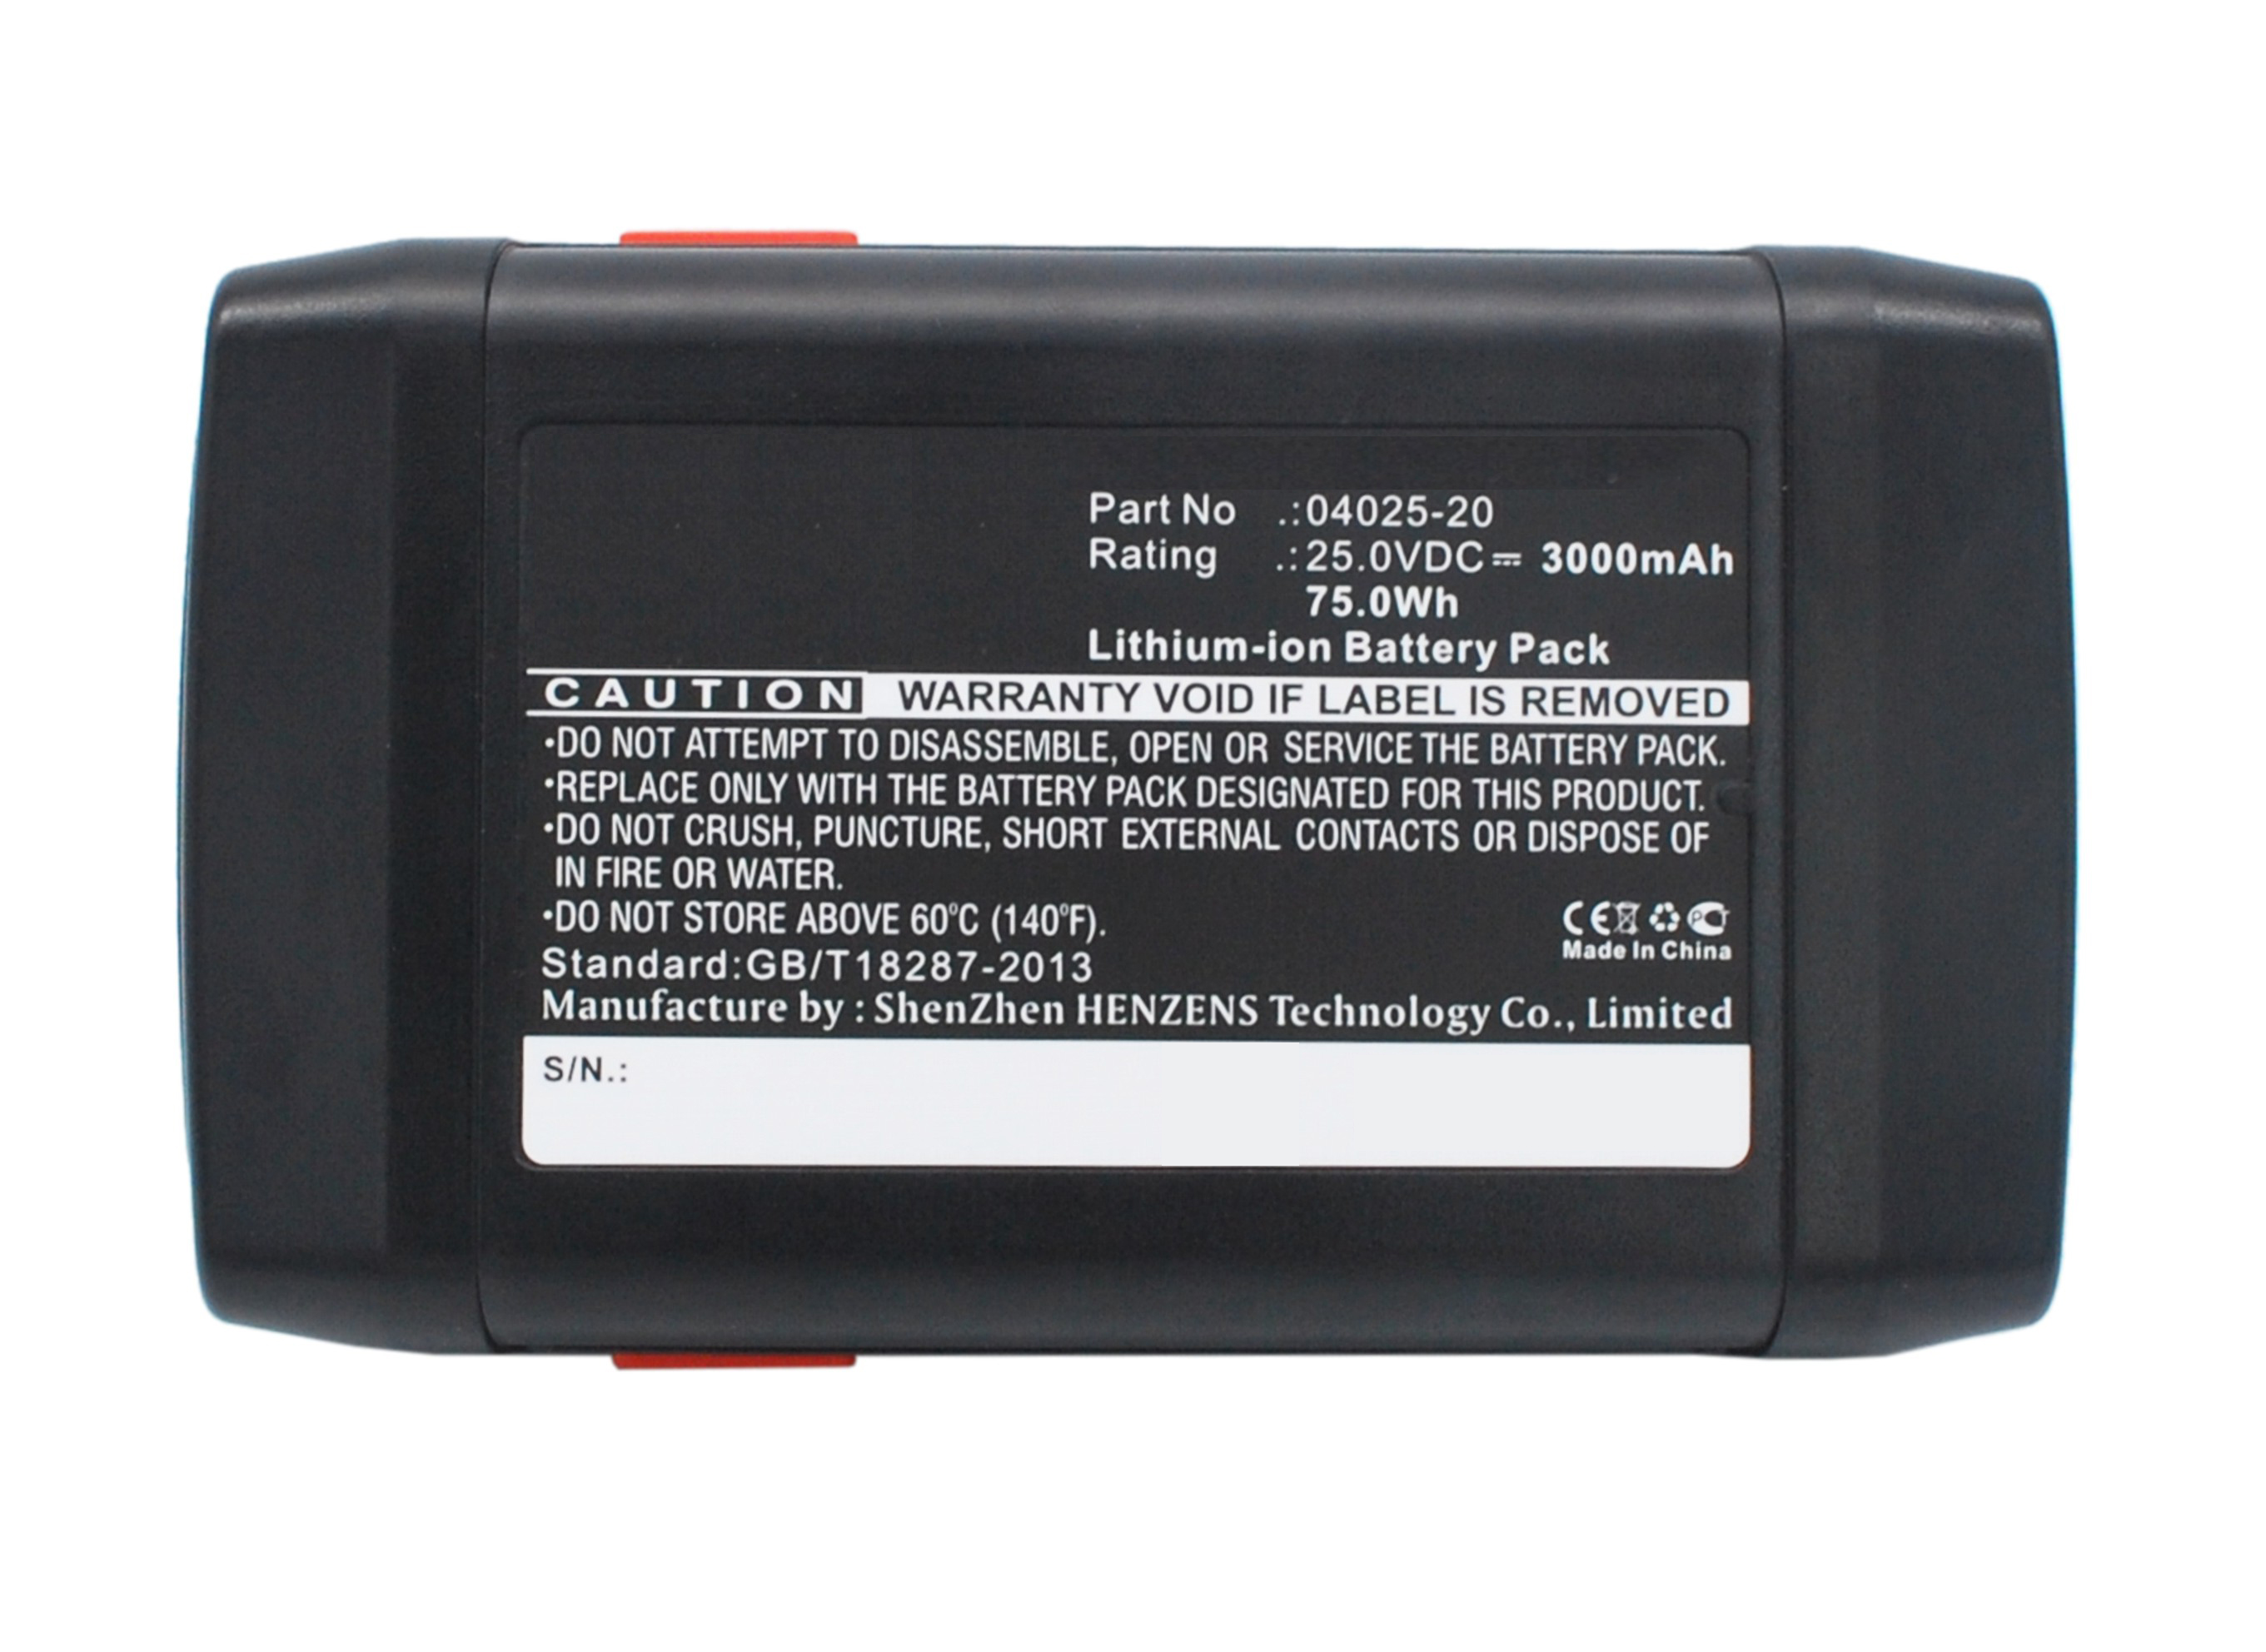 Batteries for GardenaLawn Mower